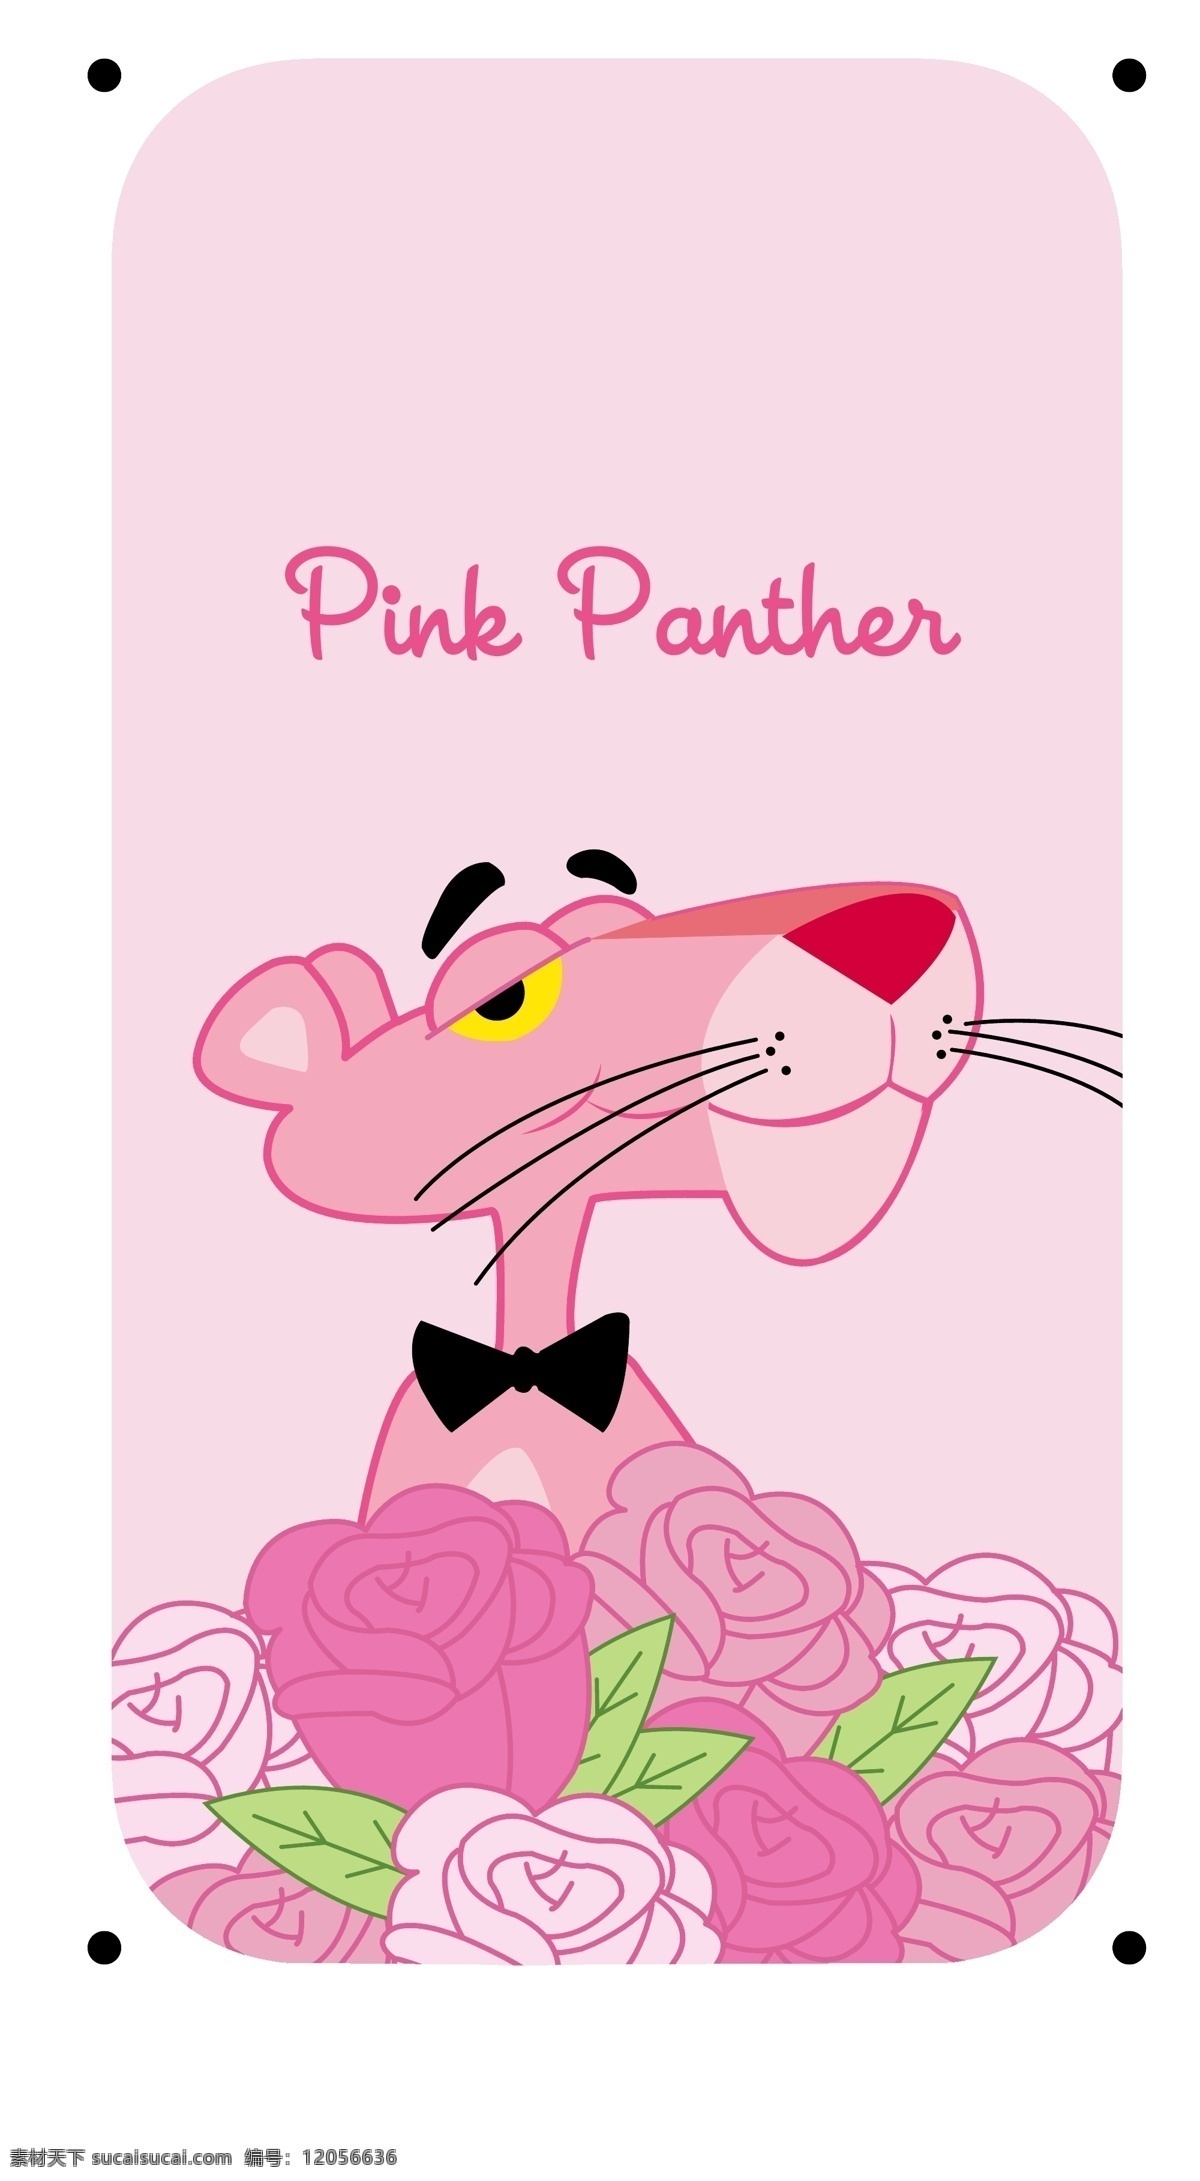 粉红顽皮豹 手机壳 玫瑰 矢量图 动漫动画 动漫人物